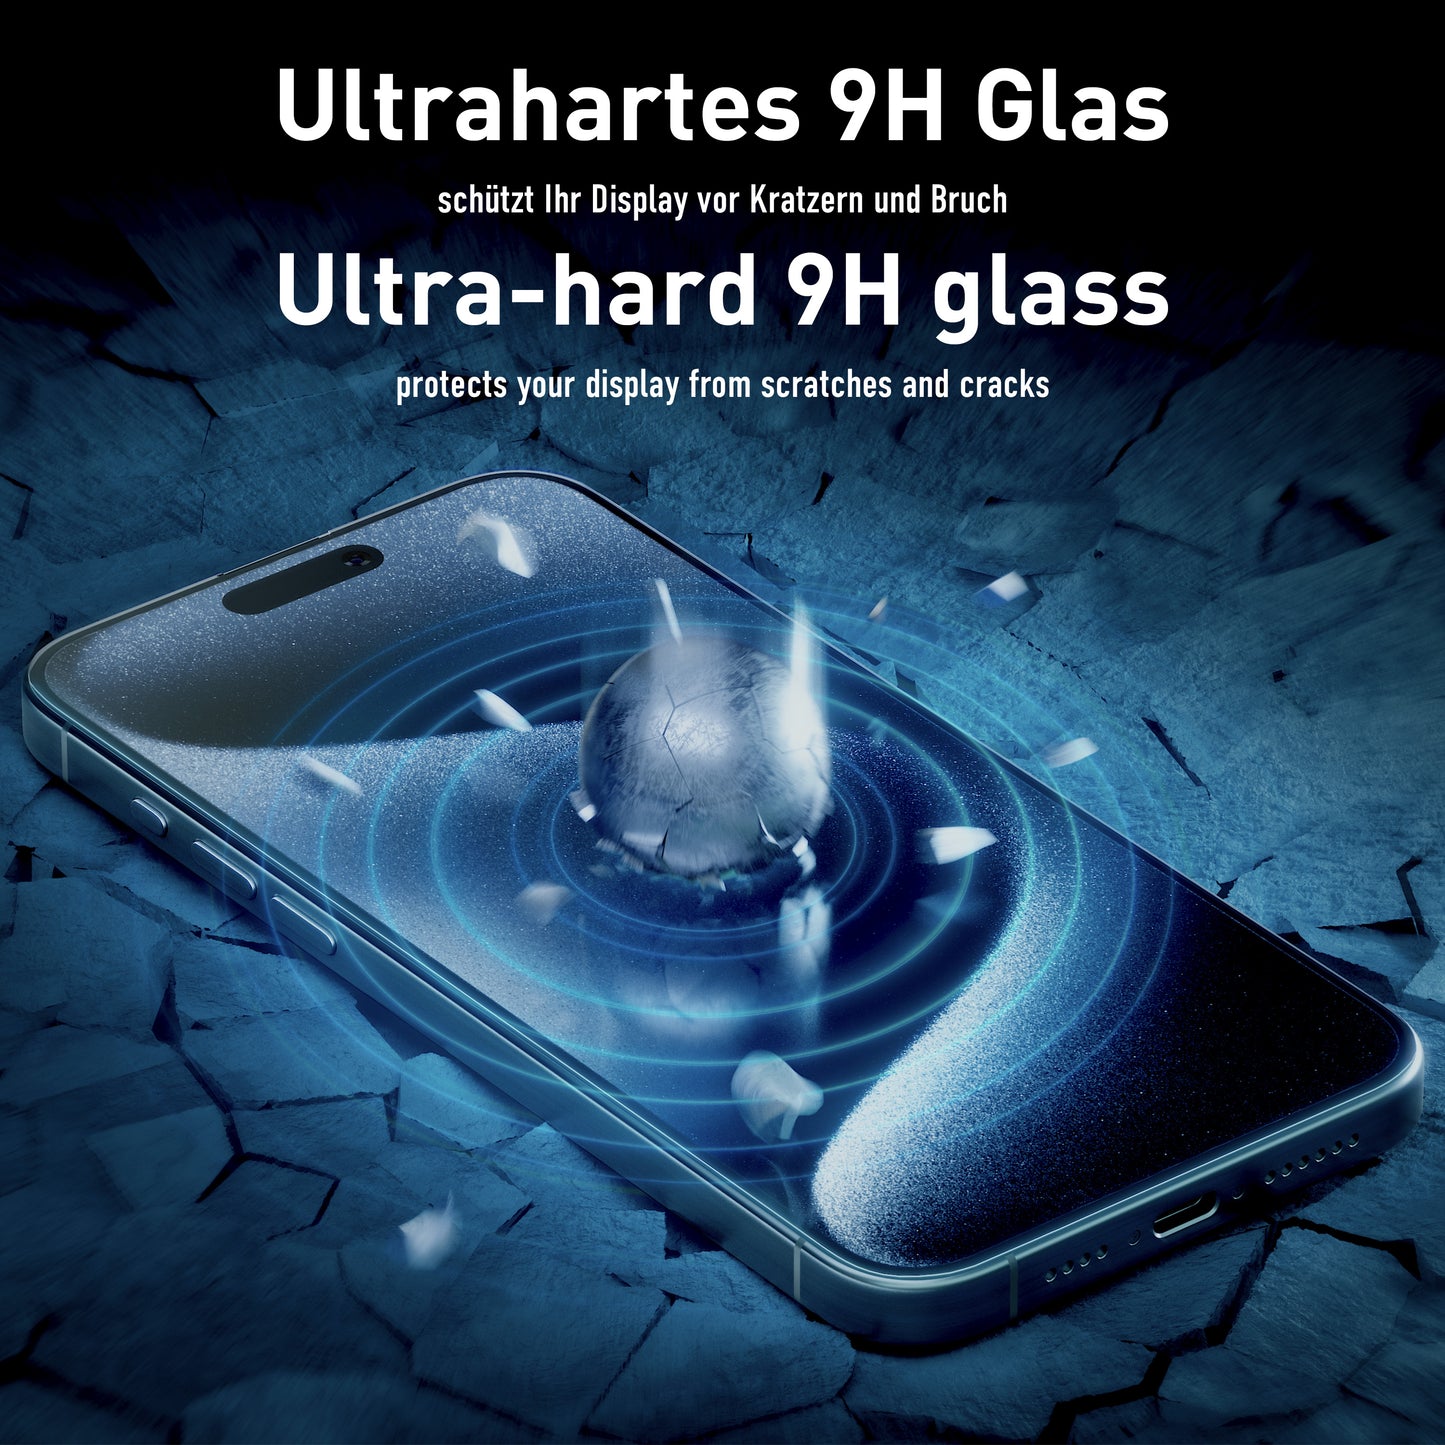 smartect Schutzglas Klar für Samsung Galaxy S23, 2 x Front + 2 x Cam